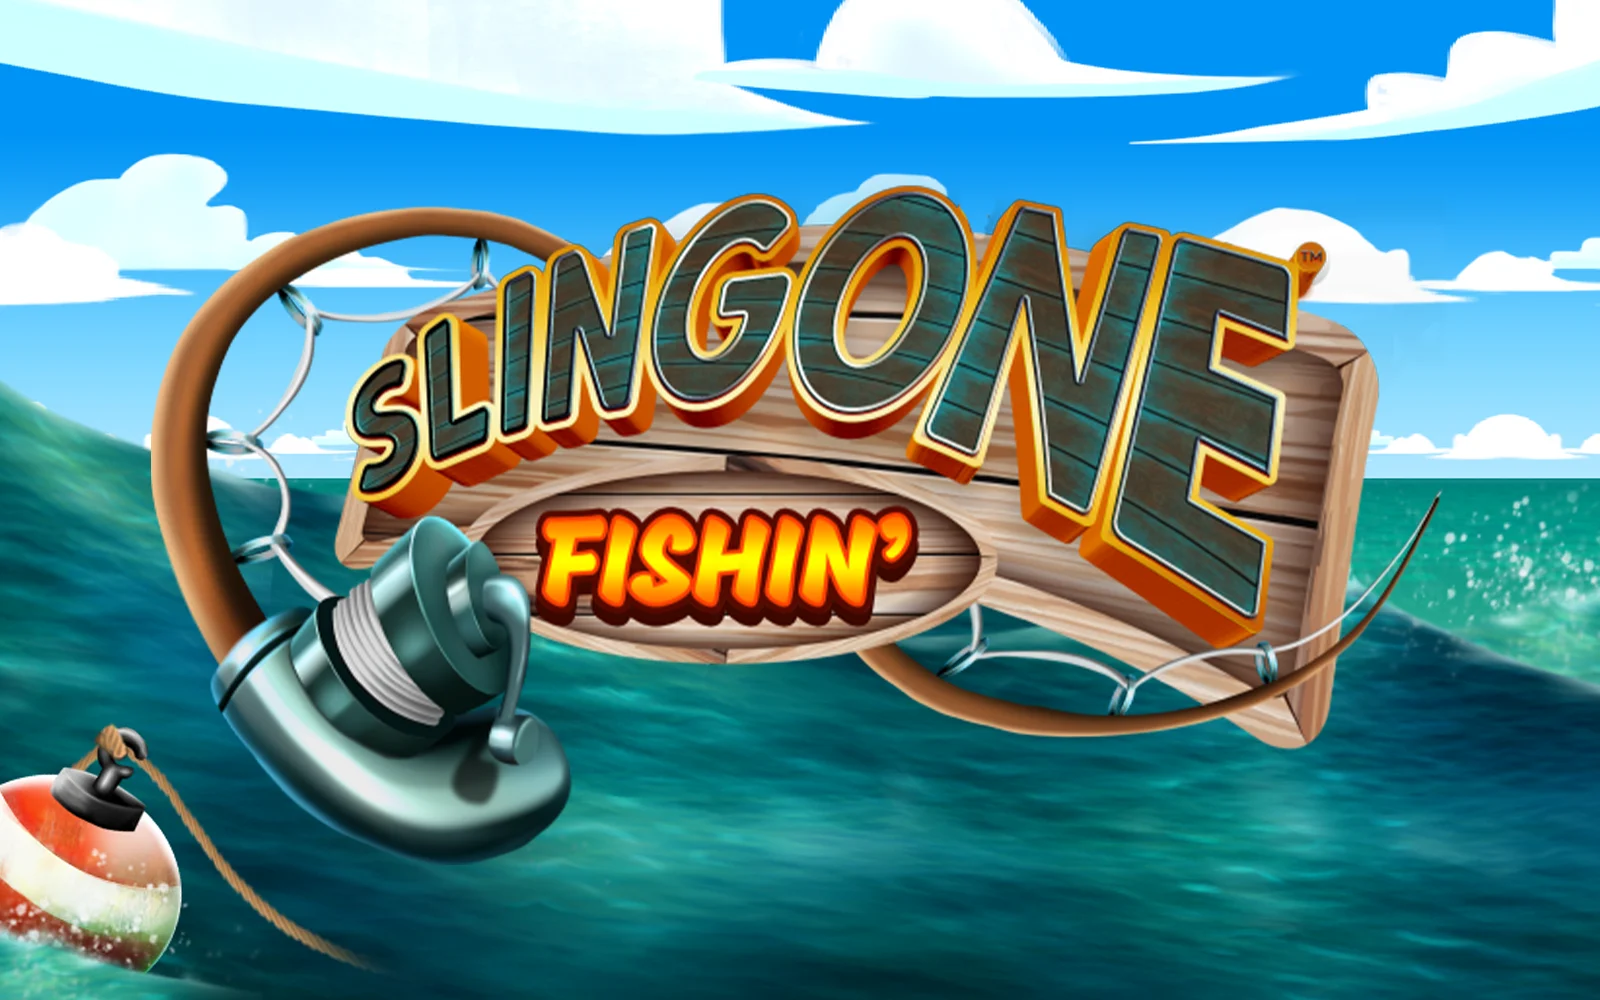 Gioca a Slingone Fishin sul casino online Starcasino.be